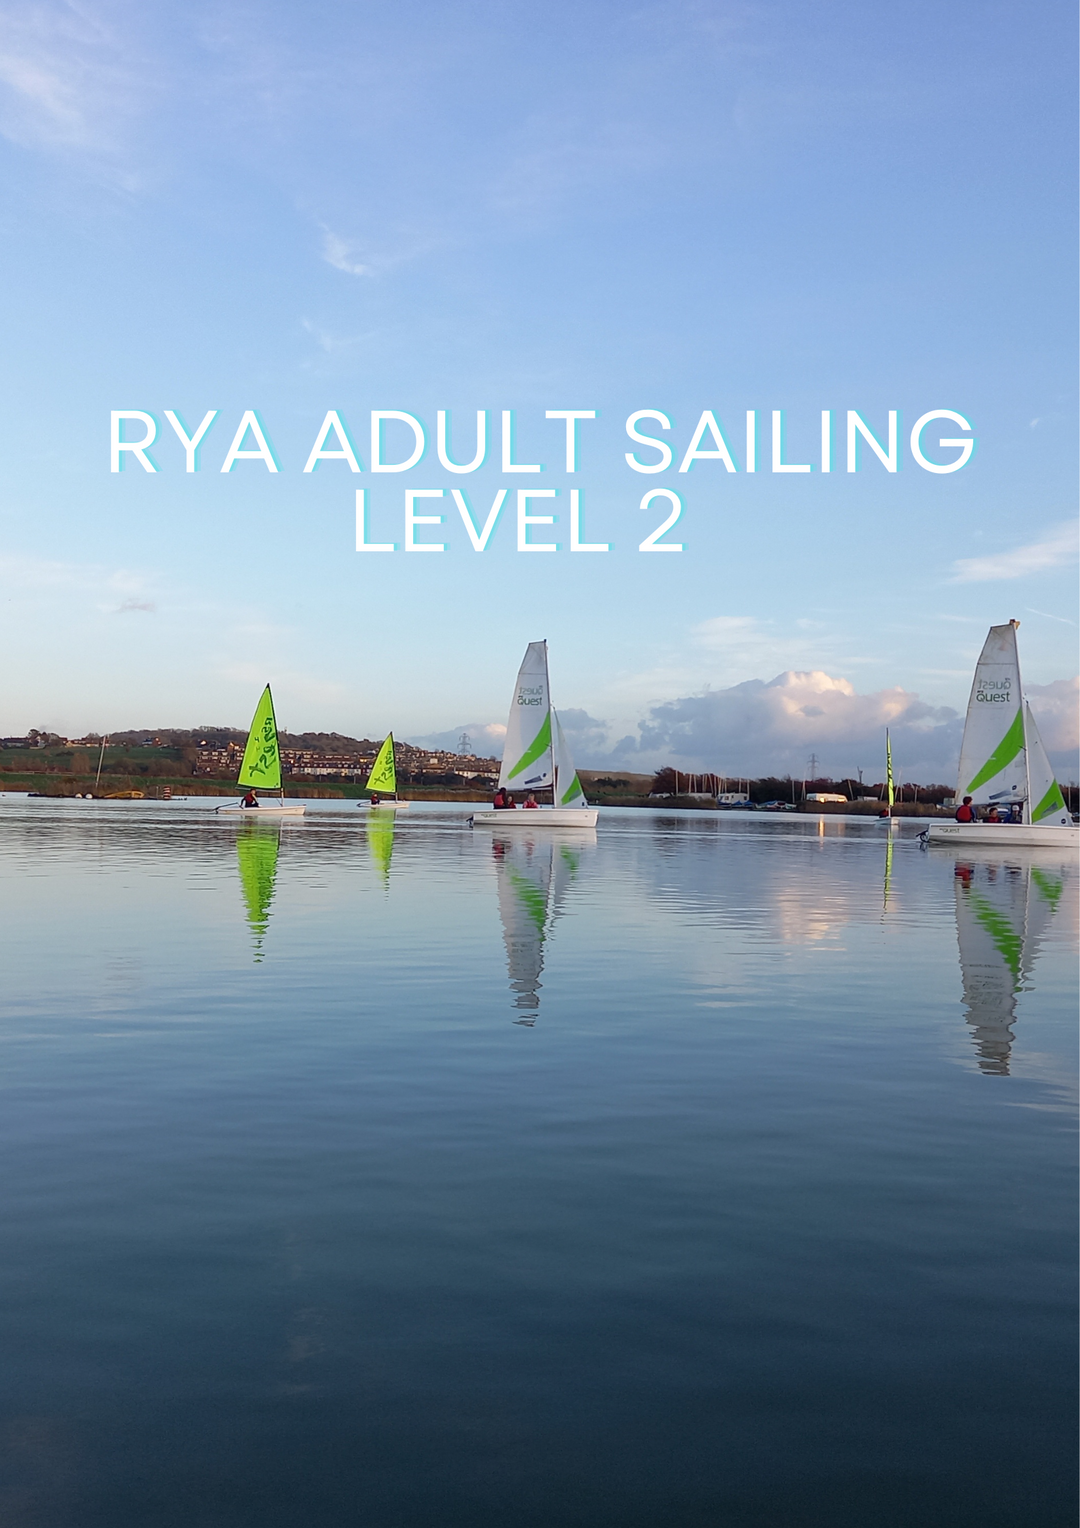 RYA Sailing Adult Level 2